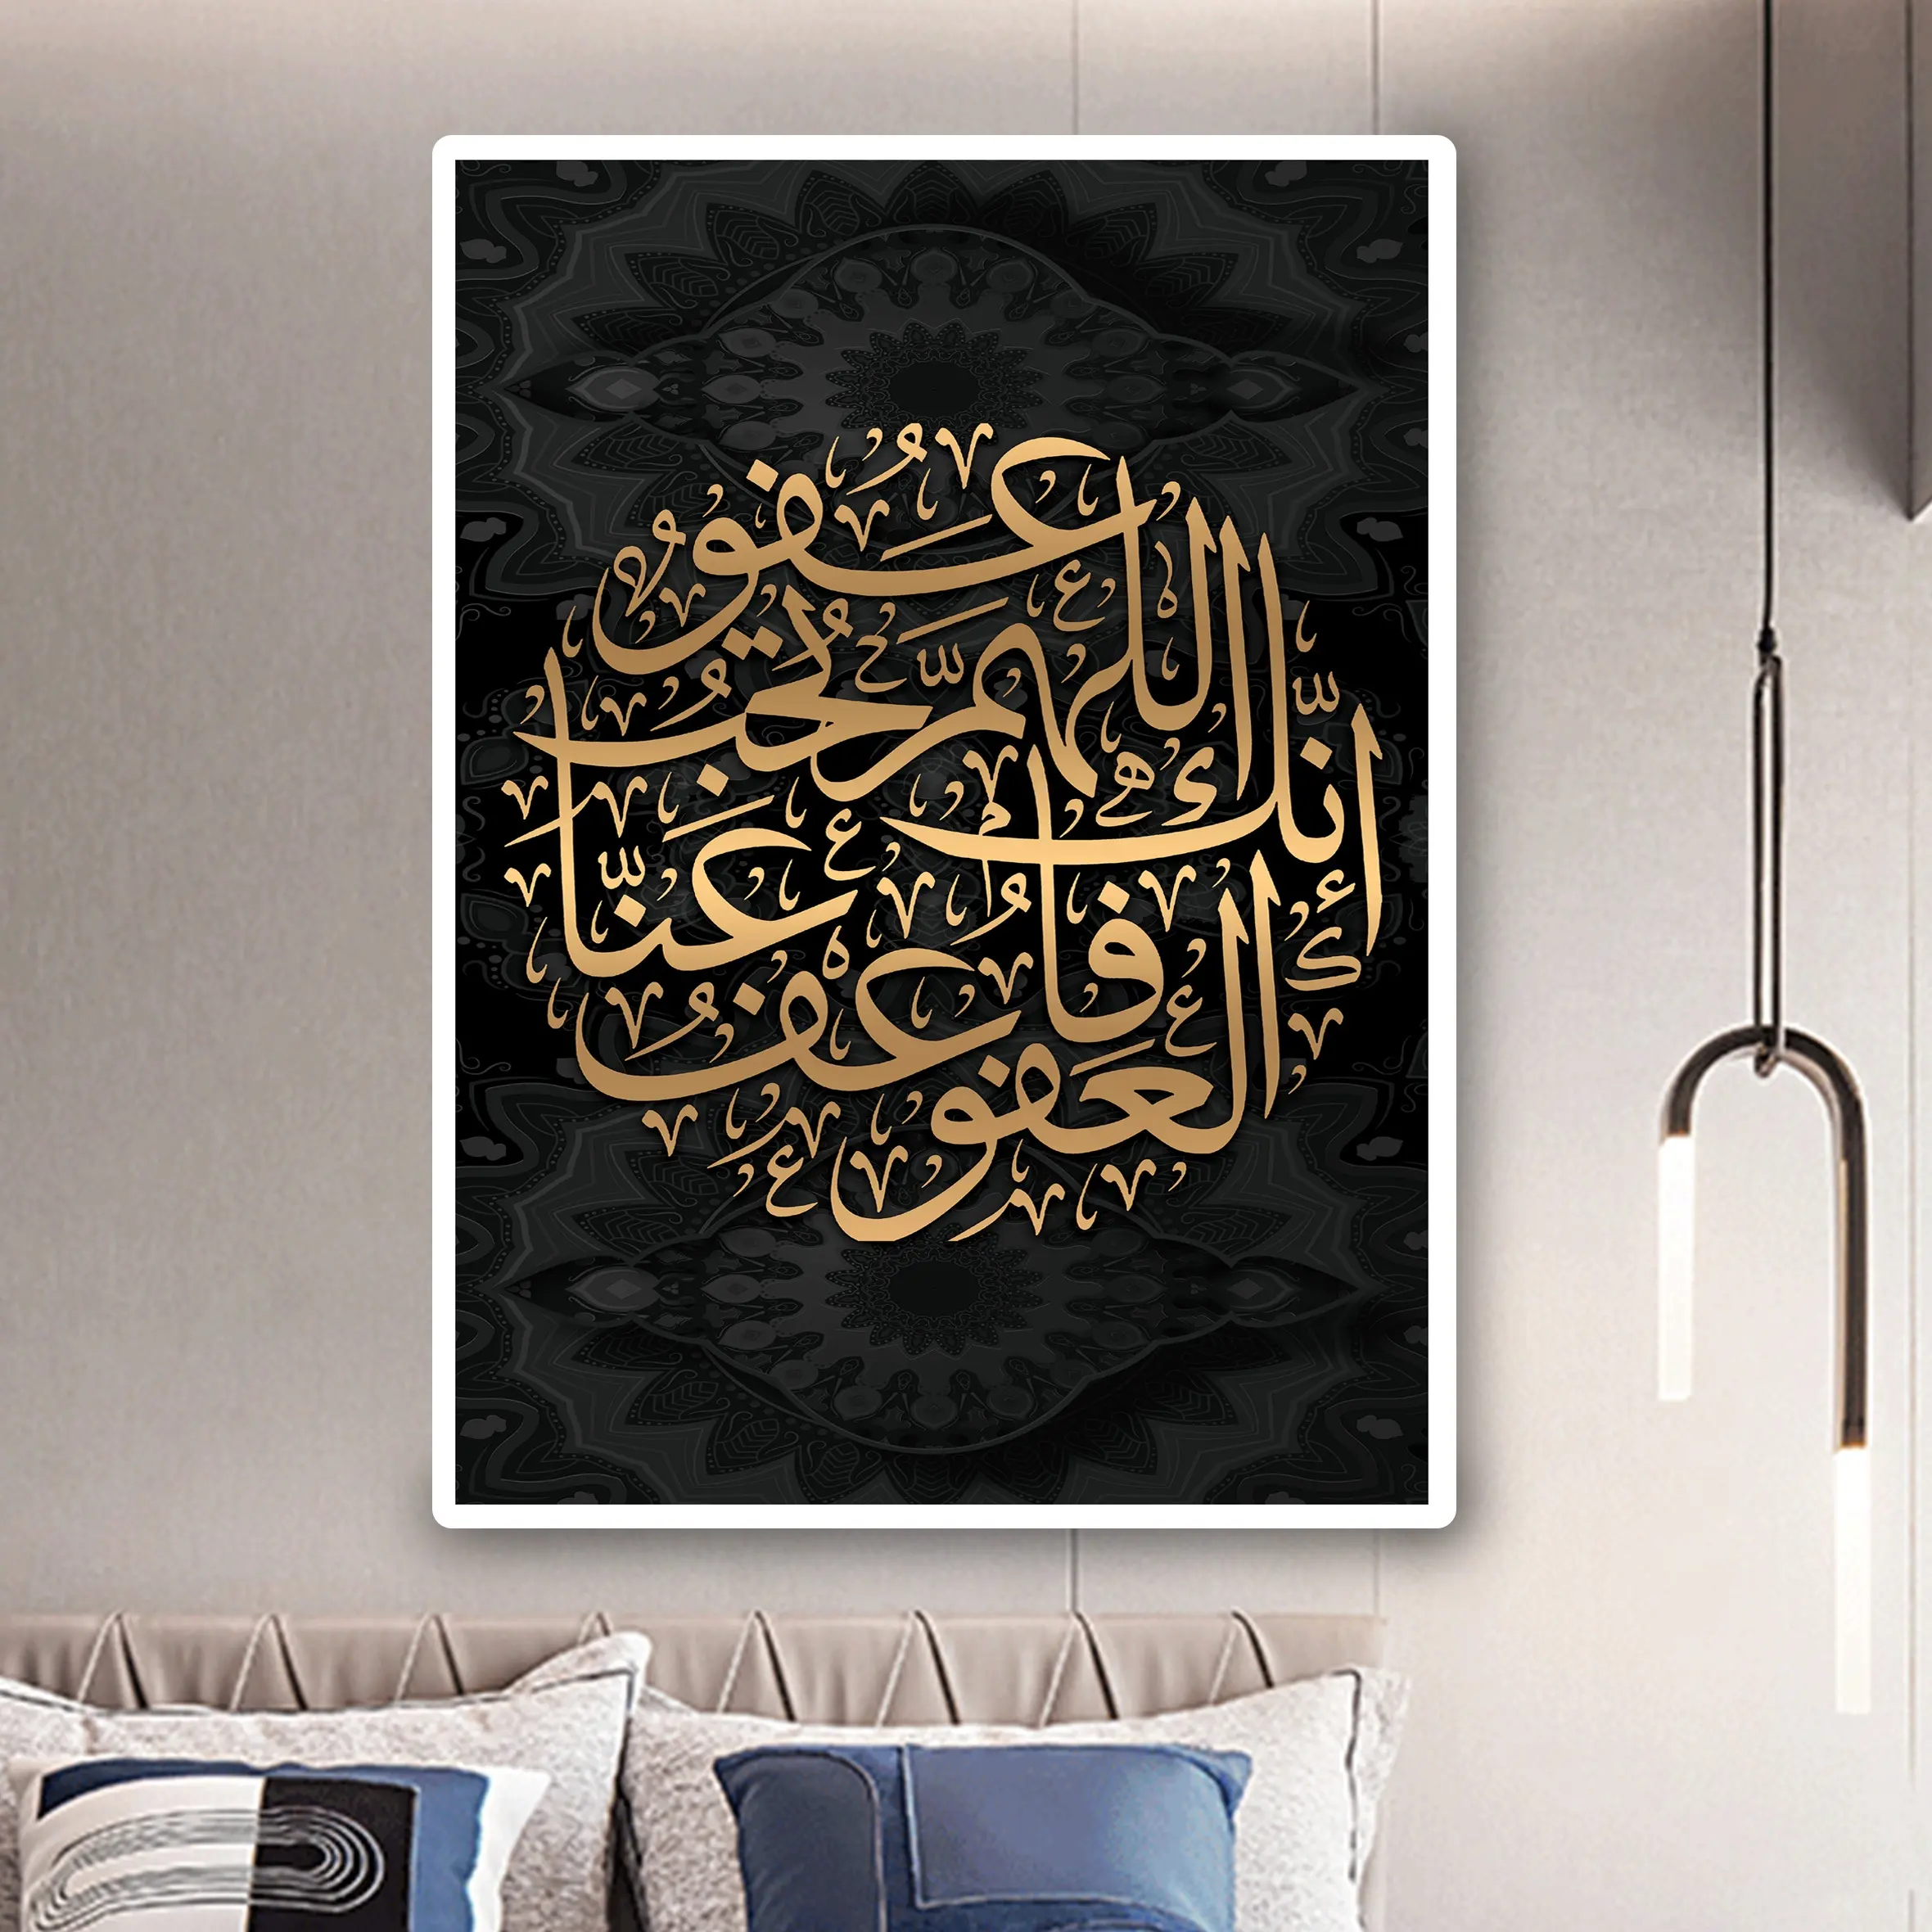 Chéri coran calligraphie photo toile peinture porcelaine cristal peinture musulman islamique mur Art décor pour la décoration de la maison